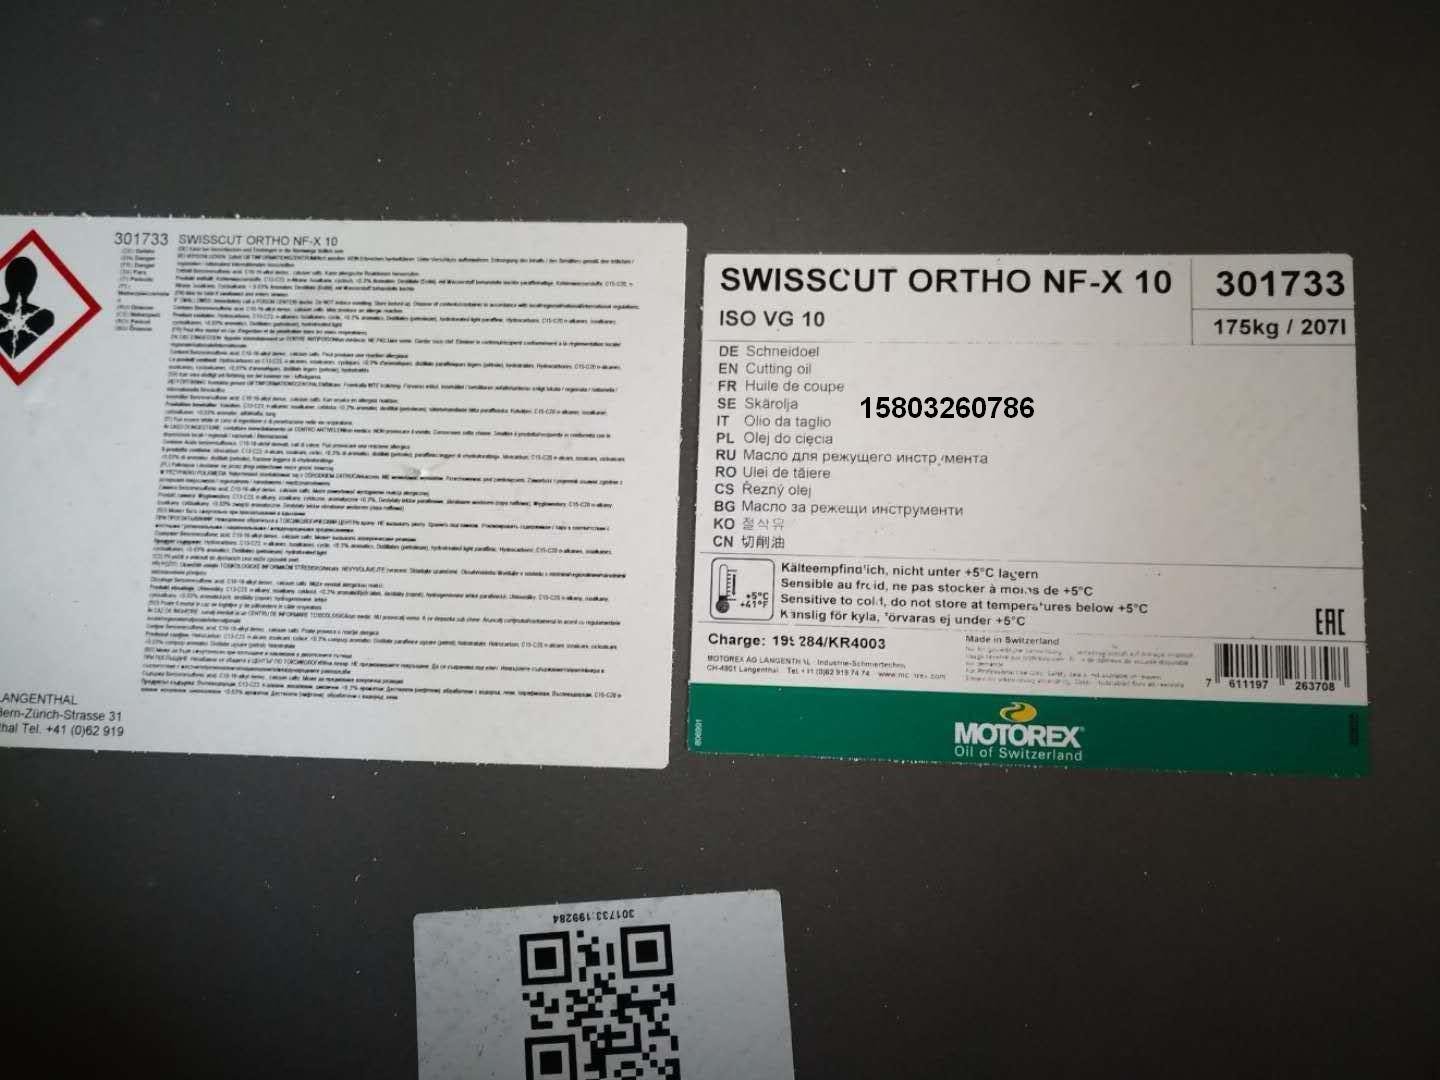 SWISSCUT ORTHO NF-X適於所有材料的高性能切削油